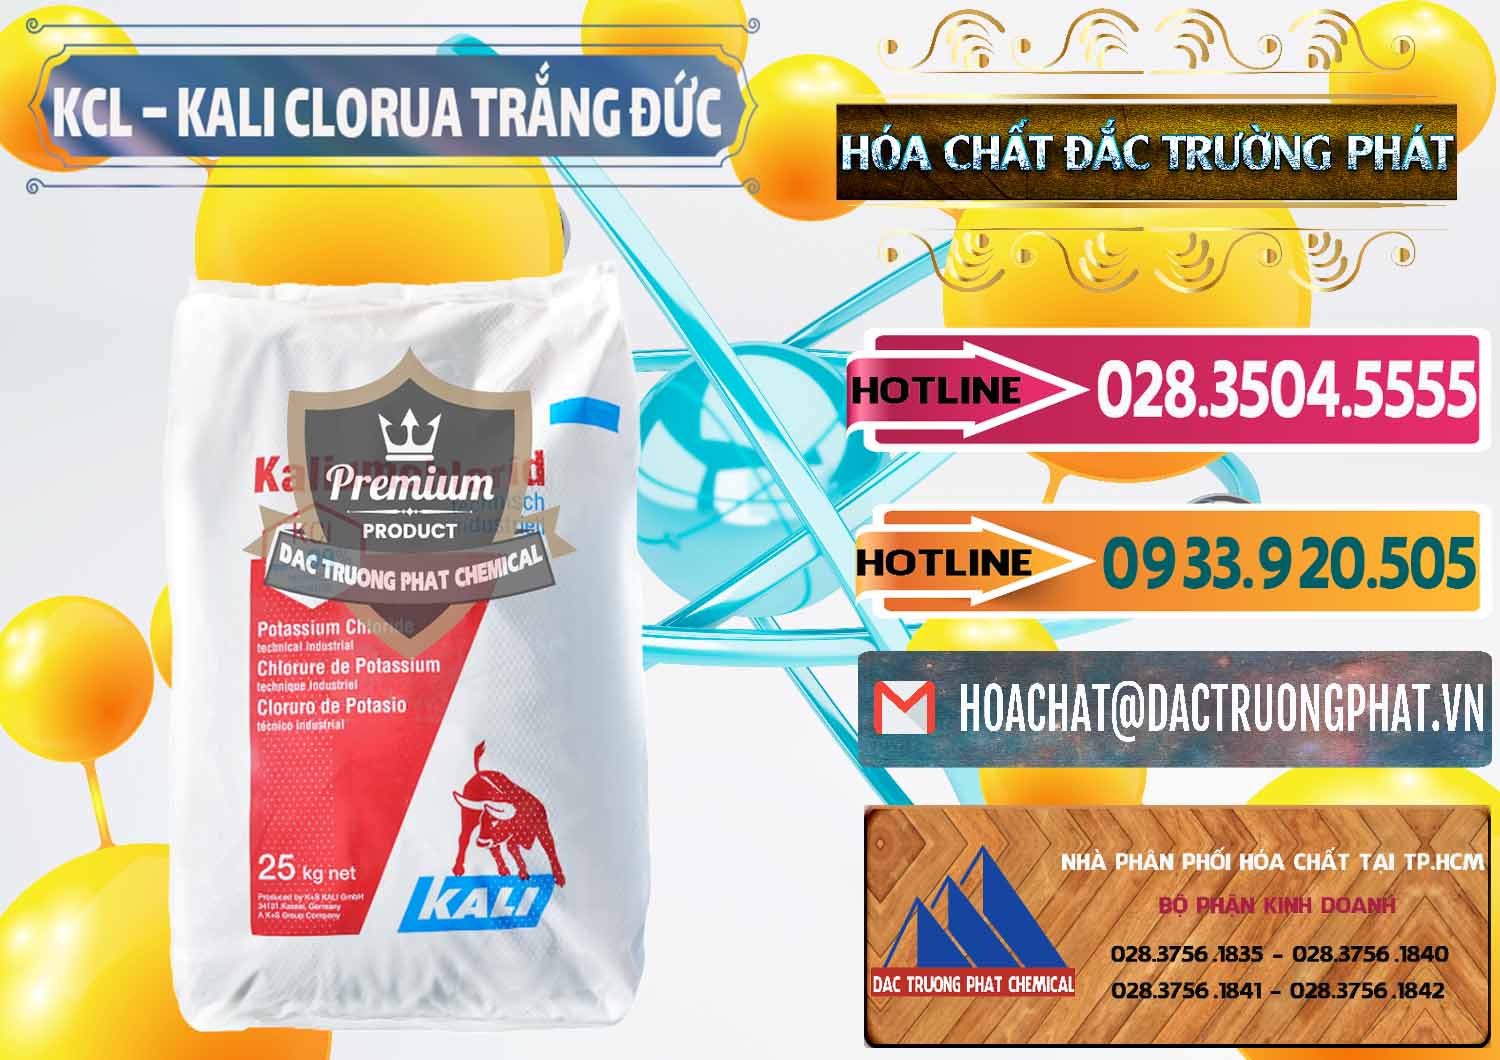 Cty nhập khẩu ( bán ) KCL – Kali Clorua Trắng Đức Germany - 0086 - Cty chuyên bán và phân phối hóa chất tại TP.HCM - dactruongphat.vn